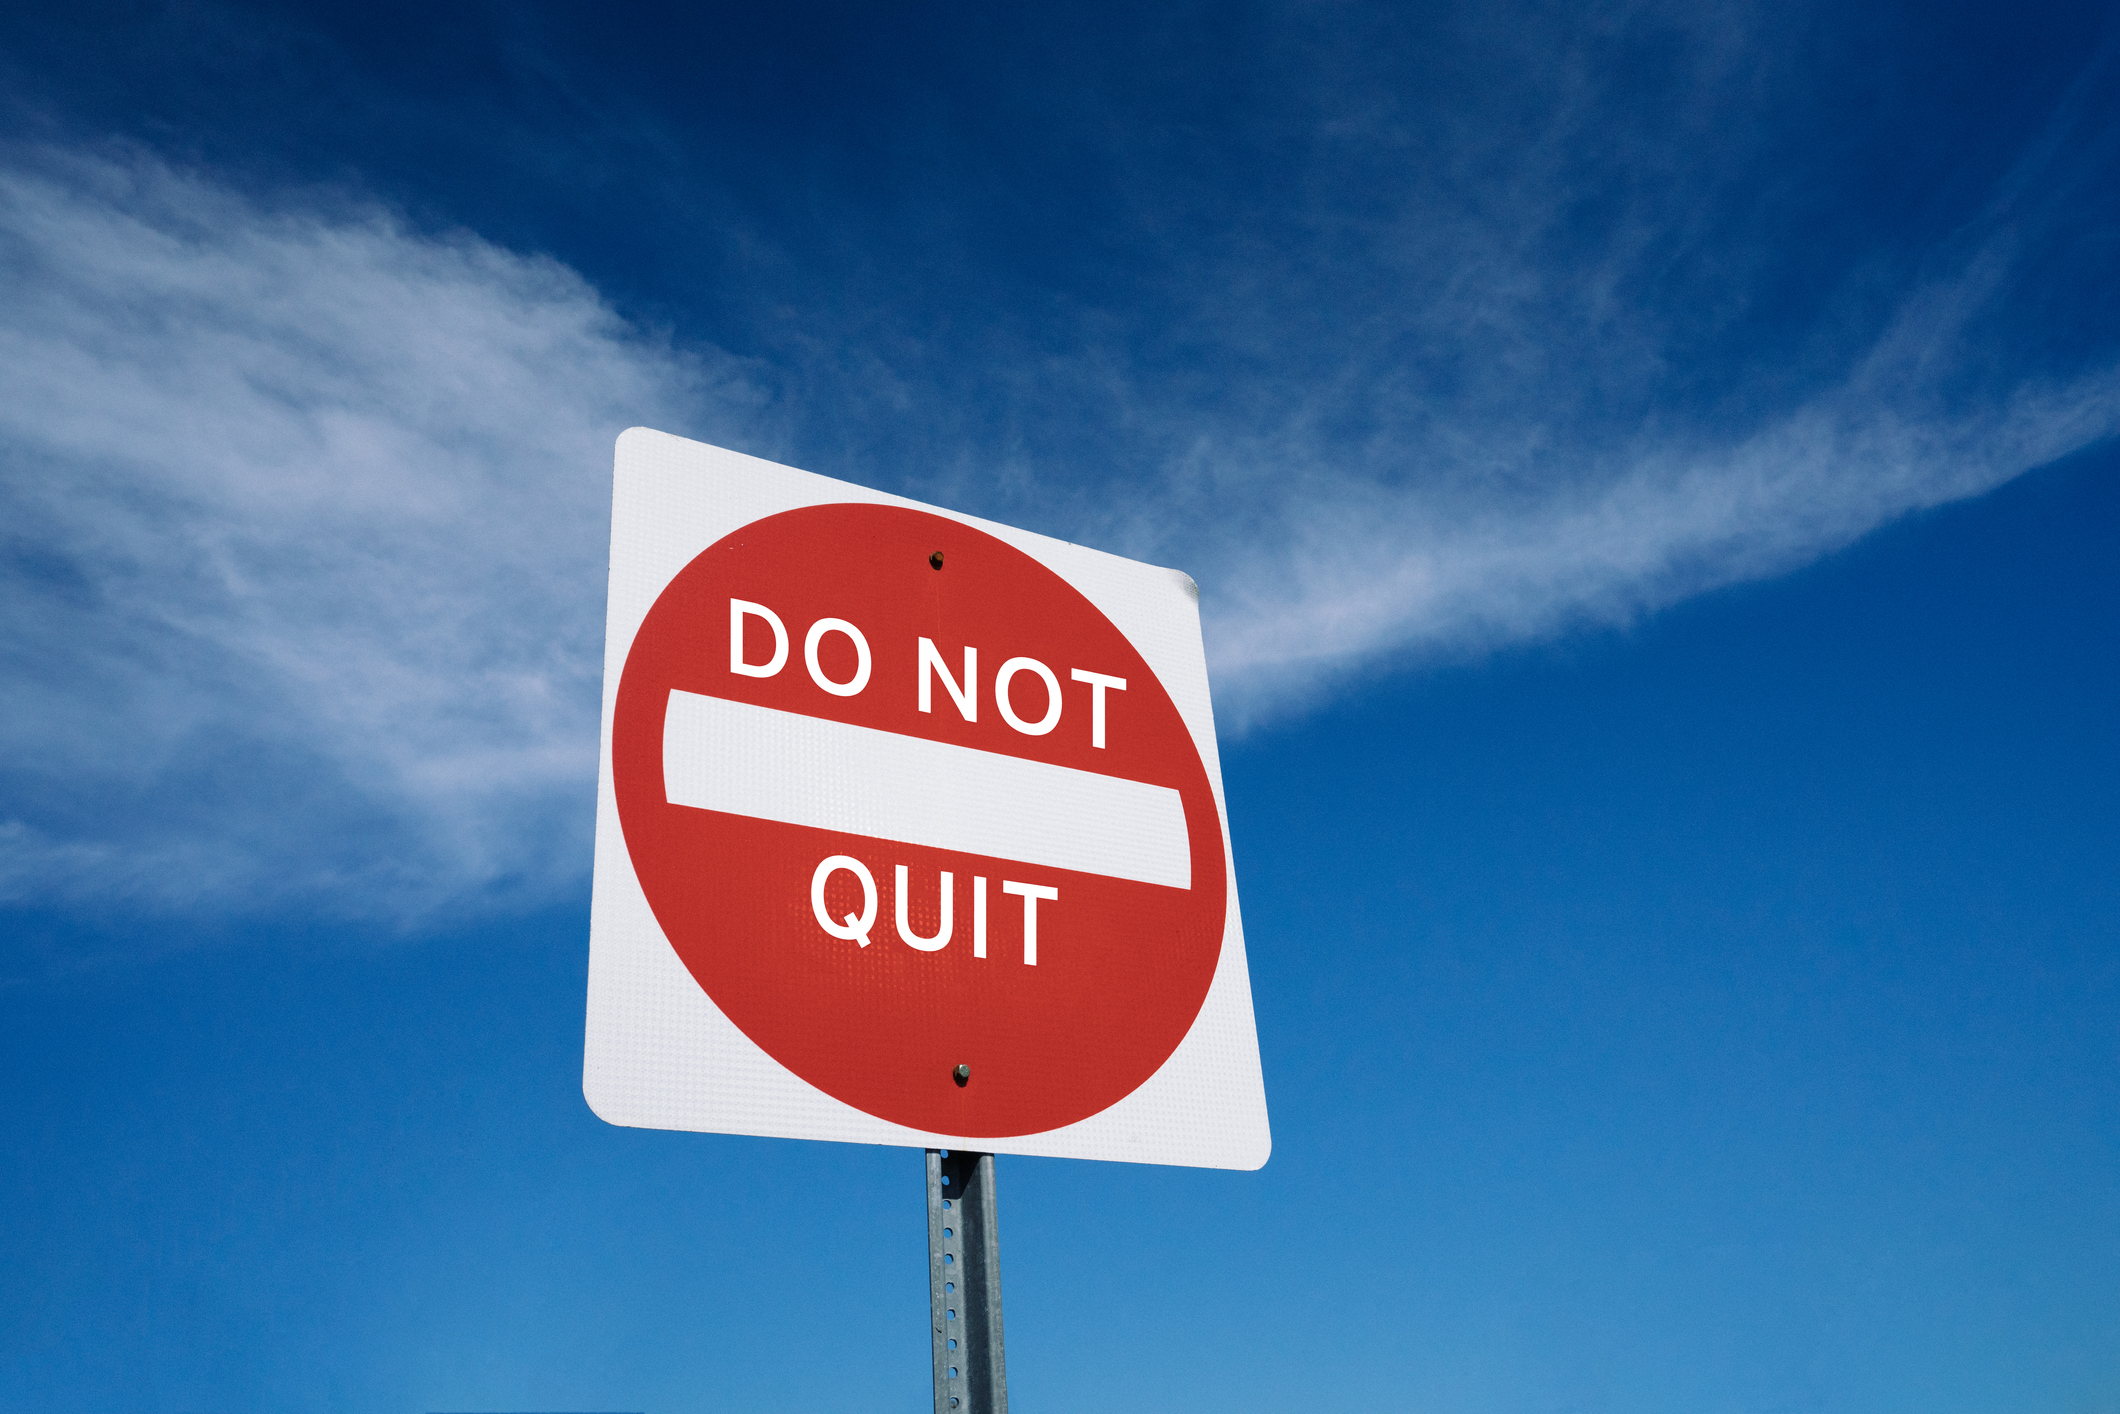 "Do Not Quit" sign against blue sky